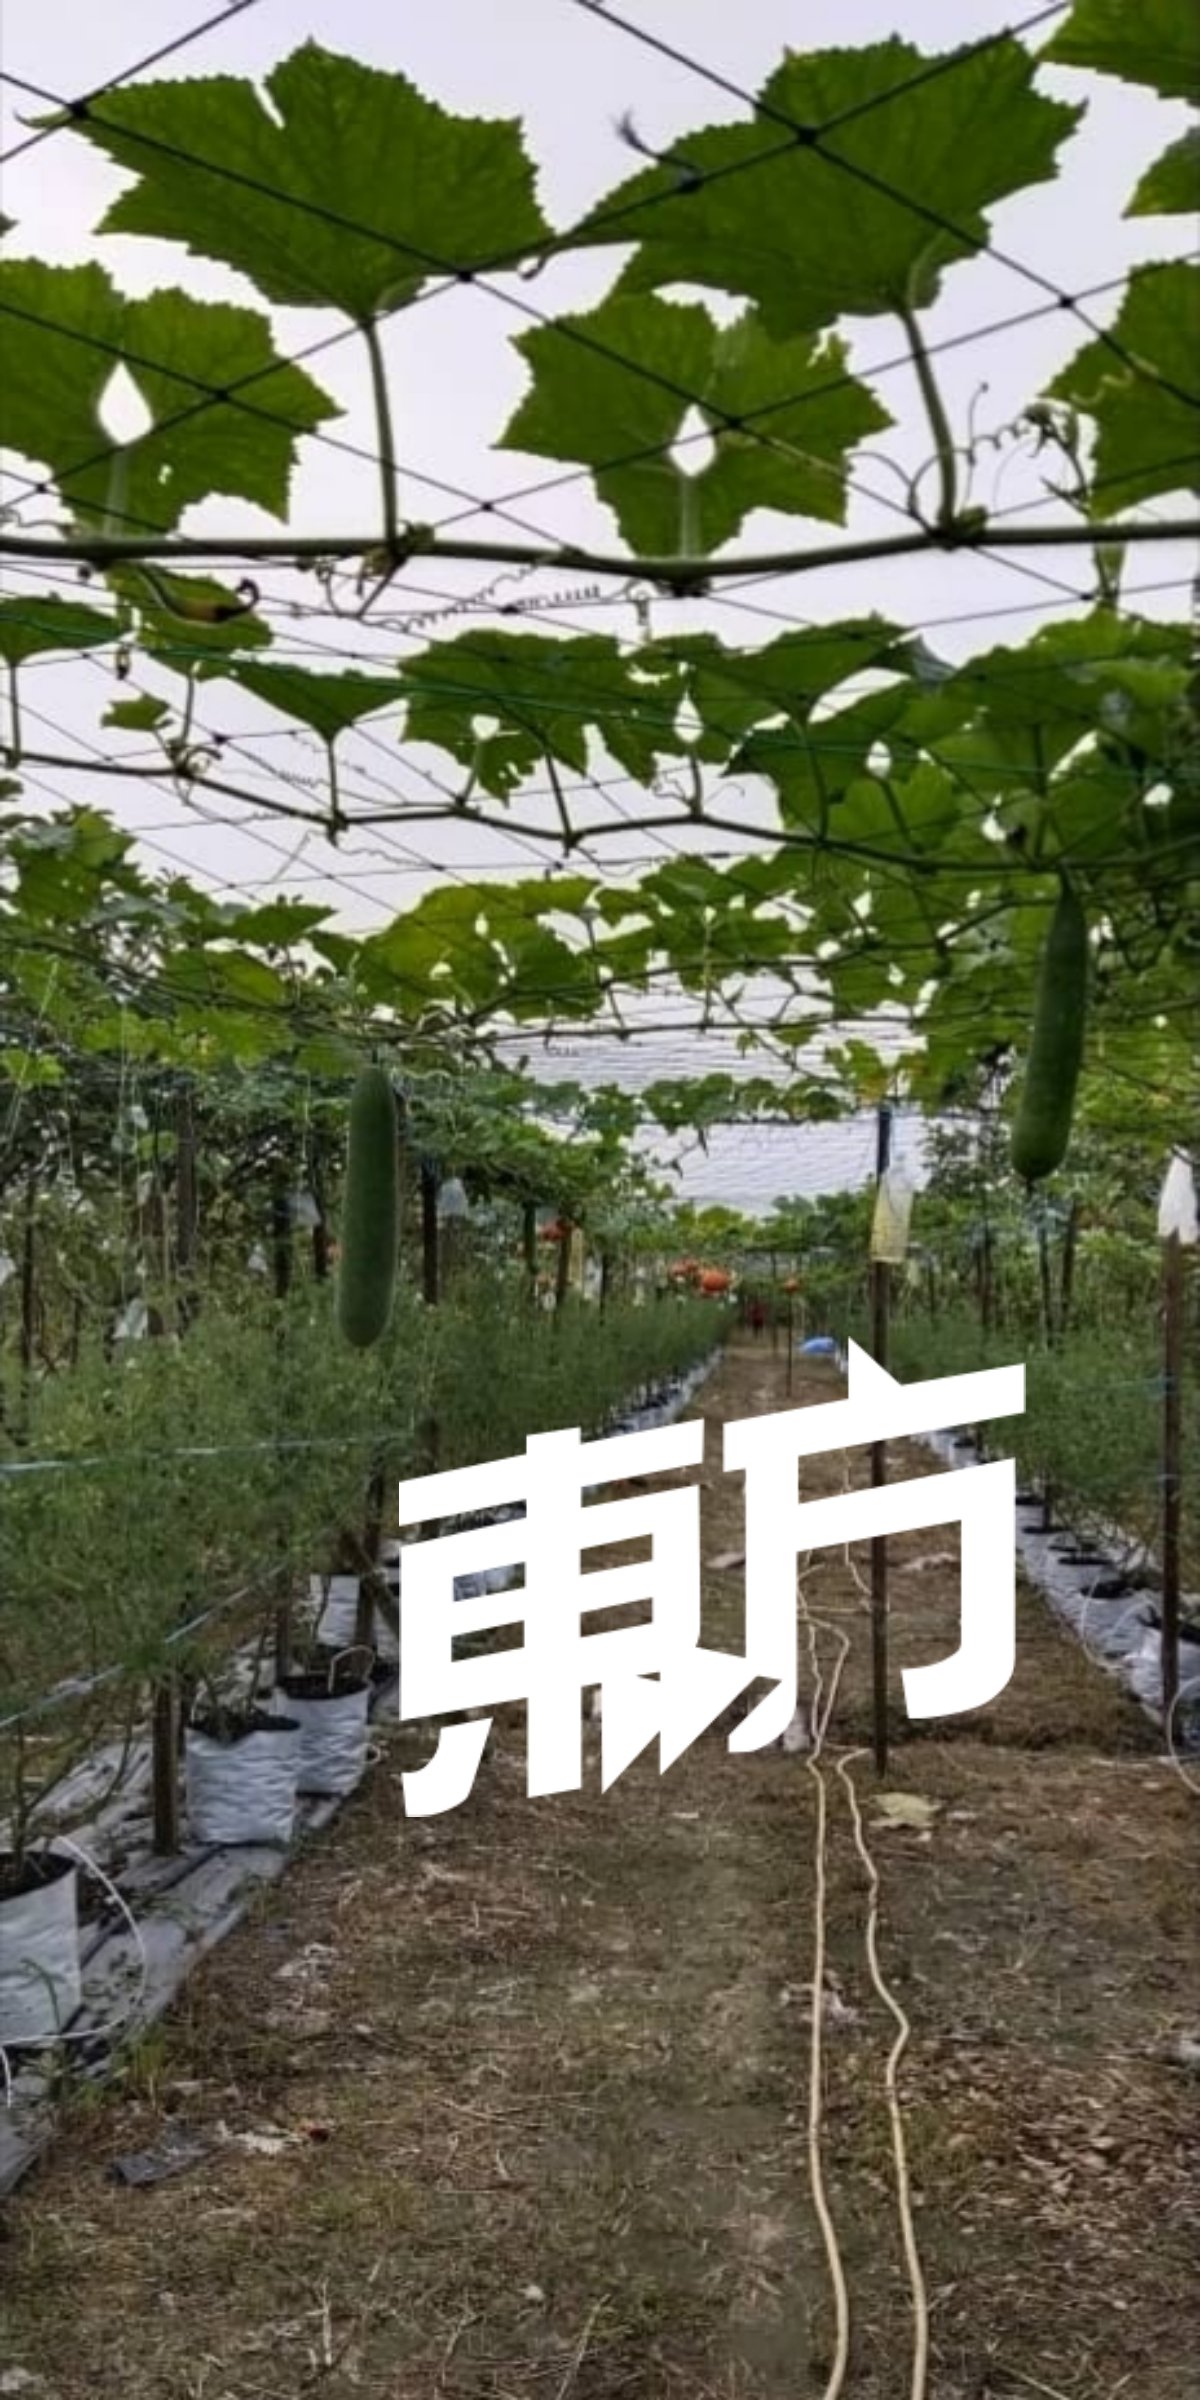 越南冬瓜在我国极为罕见，李月淋则在太平的园地栽种成功及推出市场。